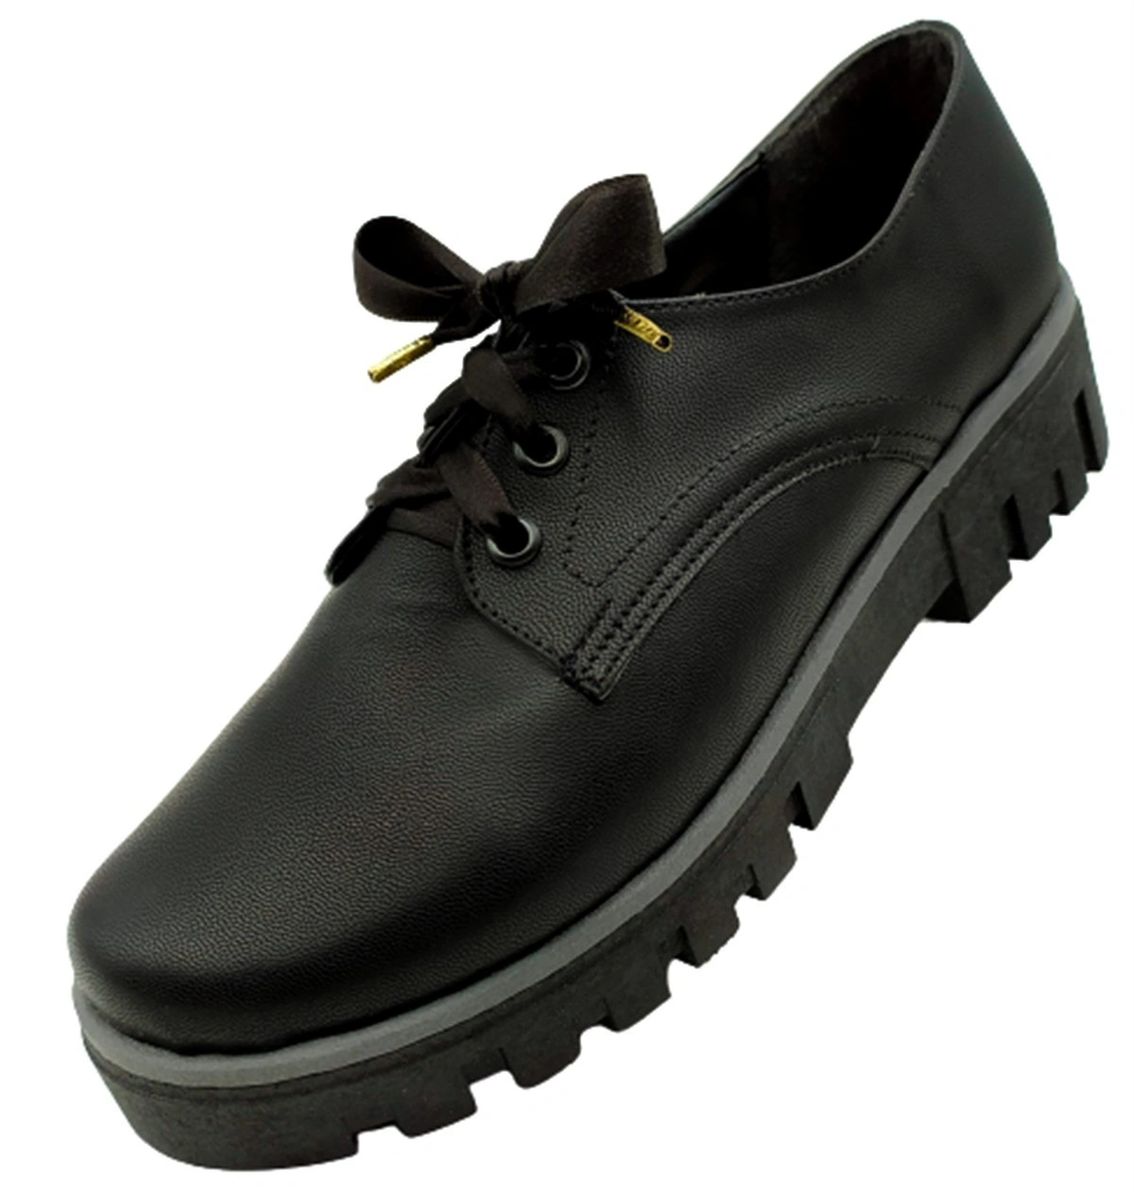 Zapatos Mujer Negro Niña Casual Moda 601-2-n